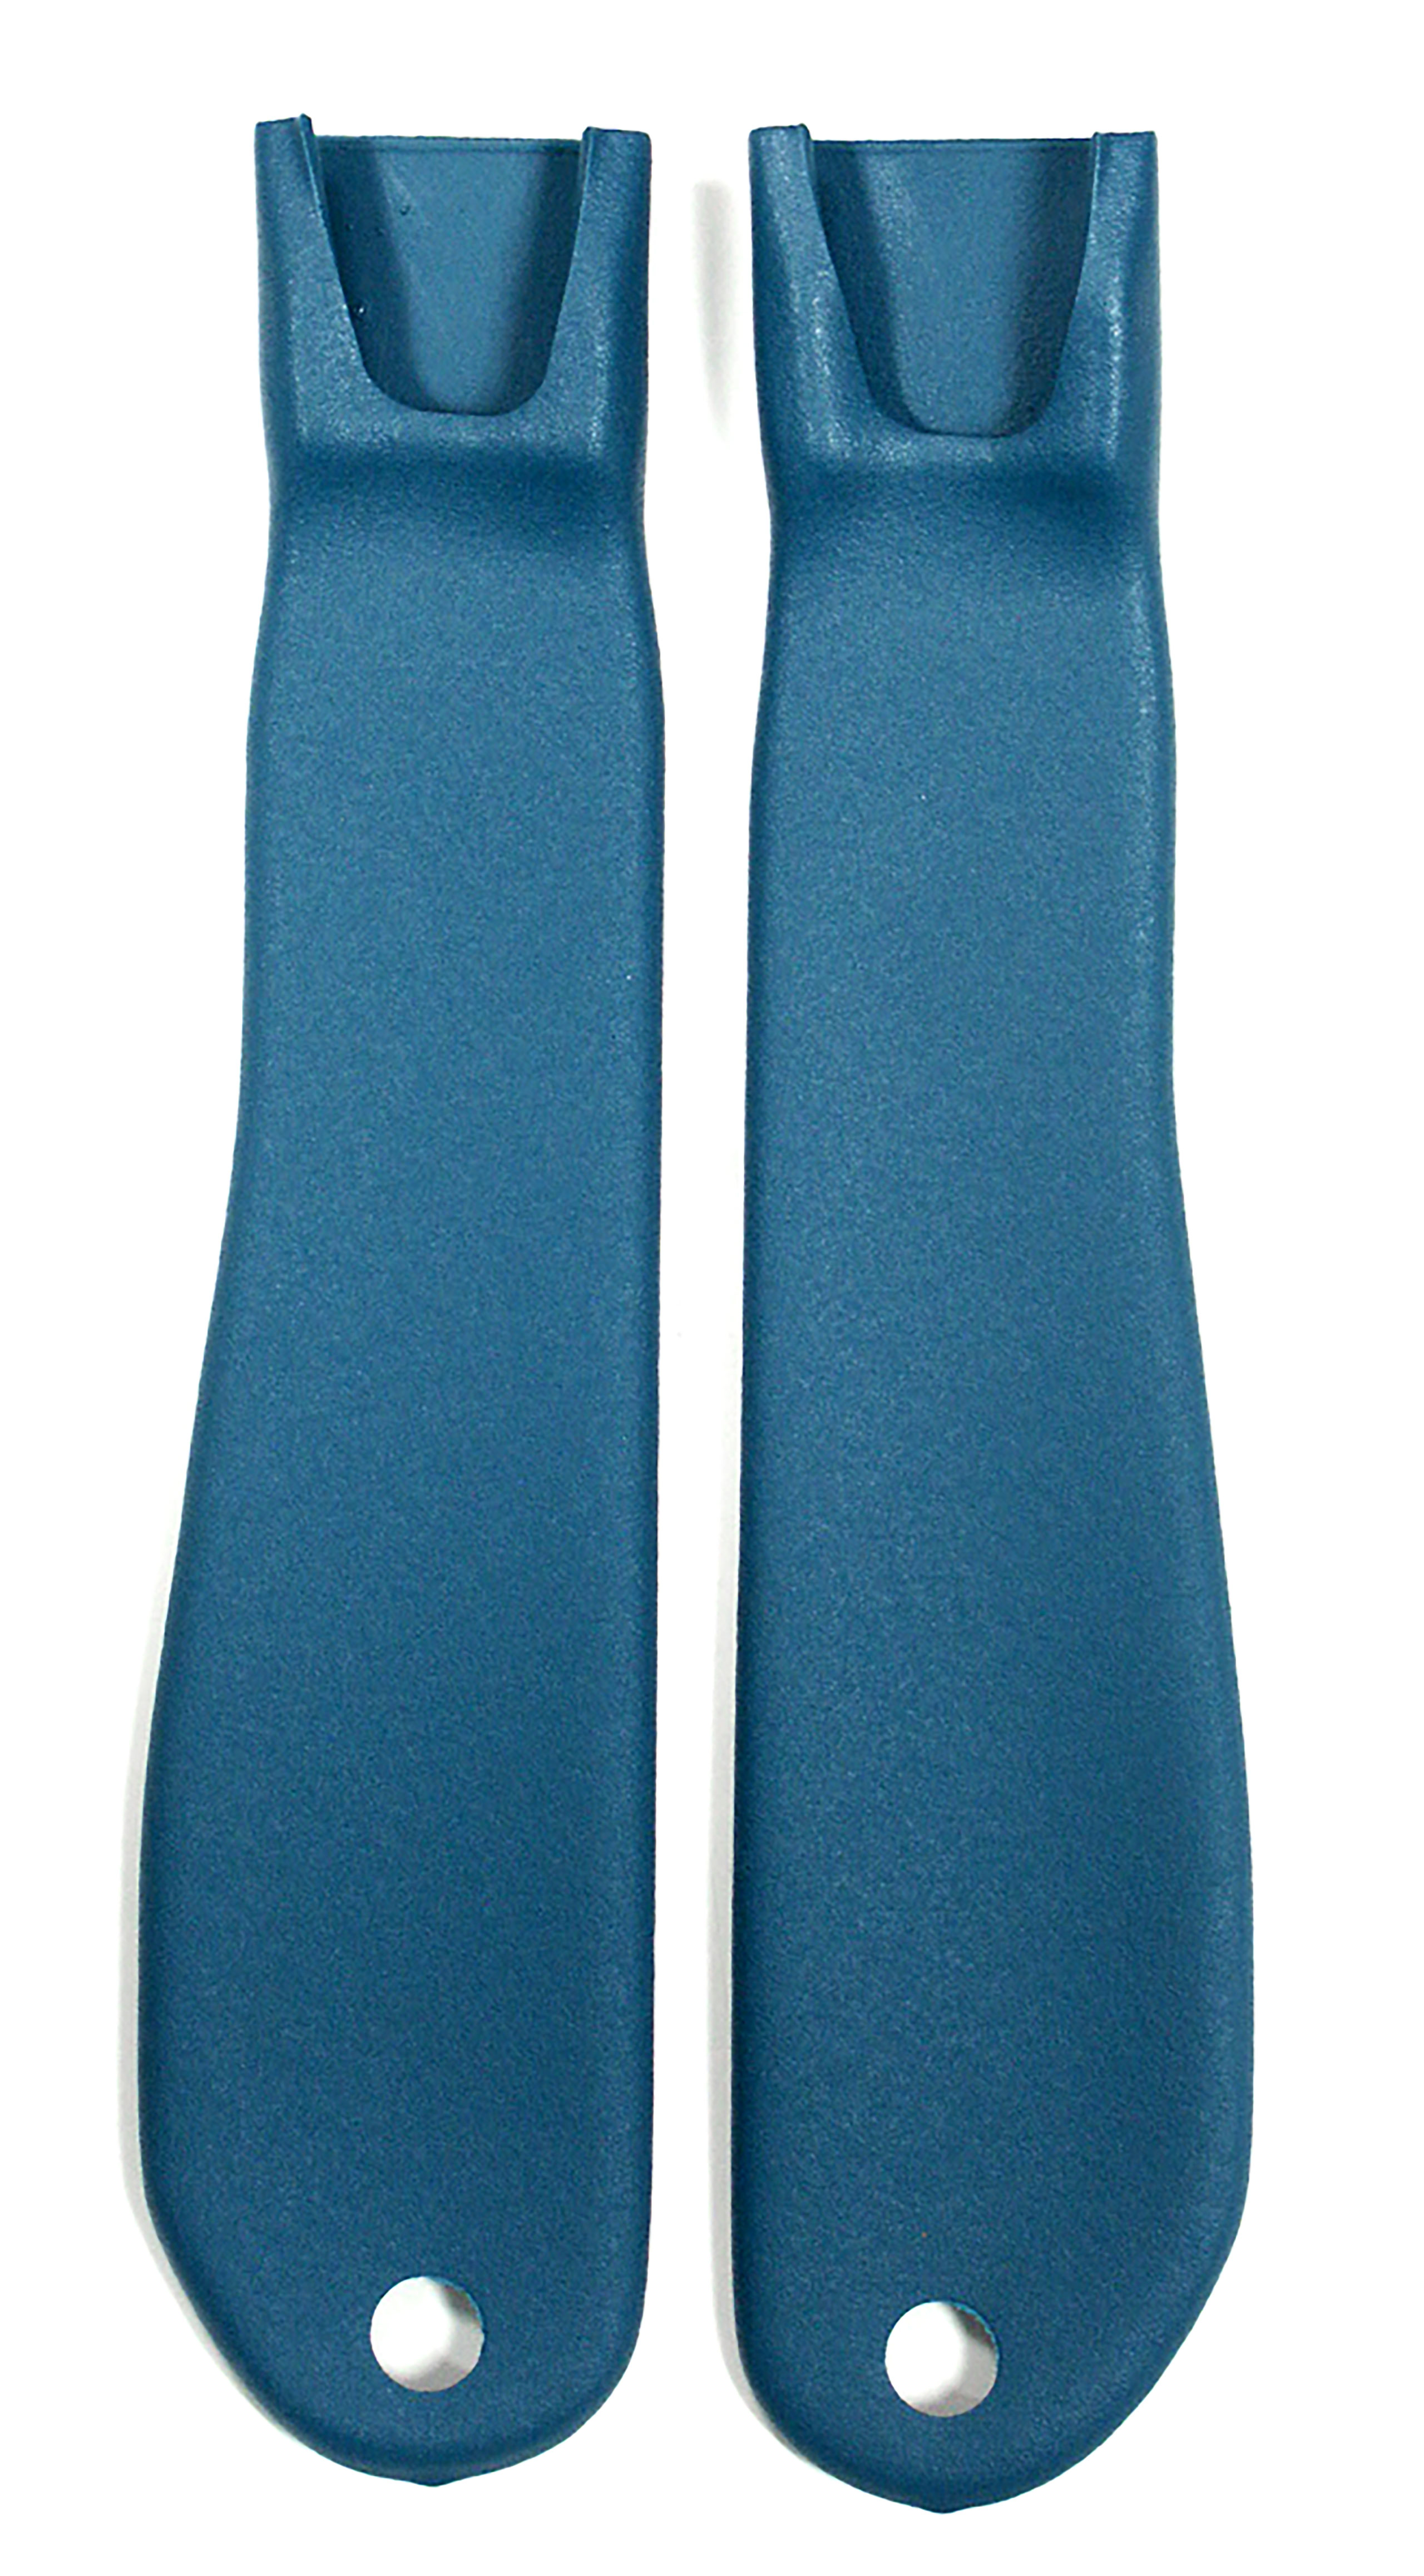 1969 C3 Corvette Seat Belt Inner Sleeve Kit - Bright Blue